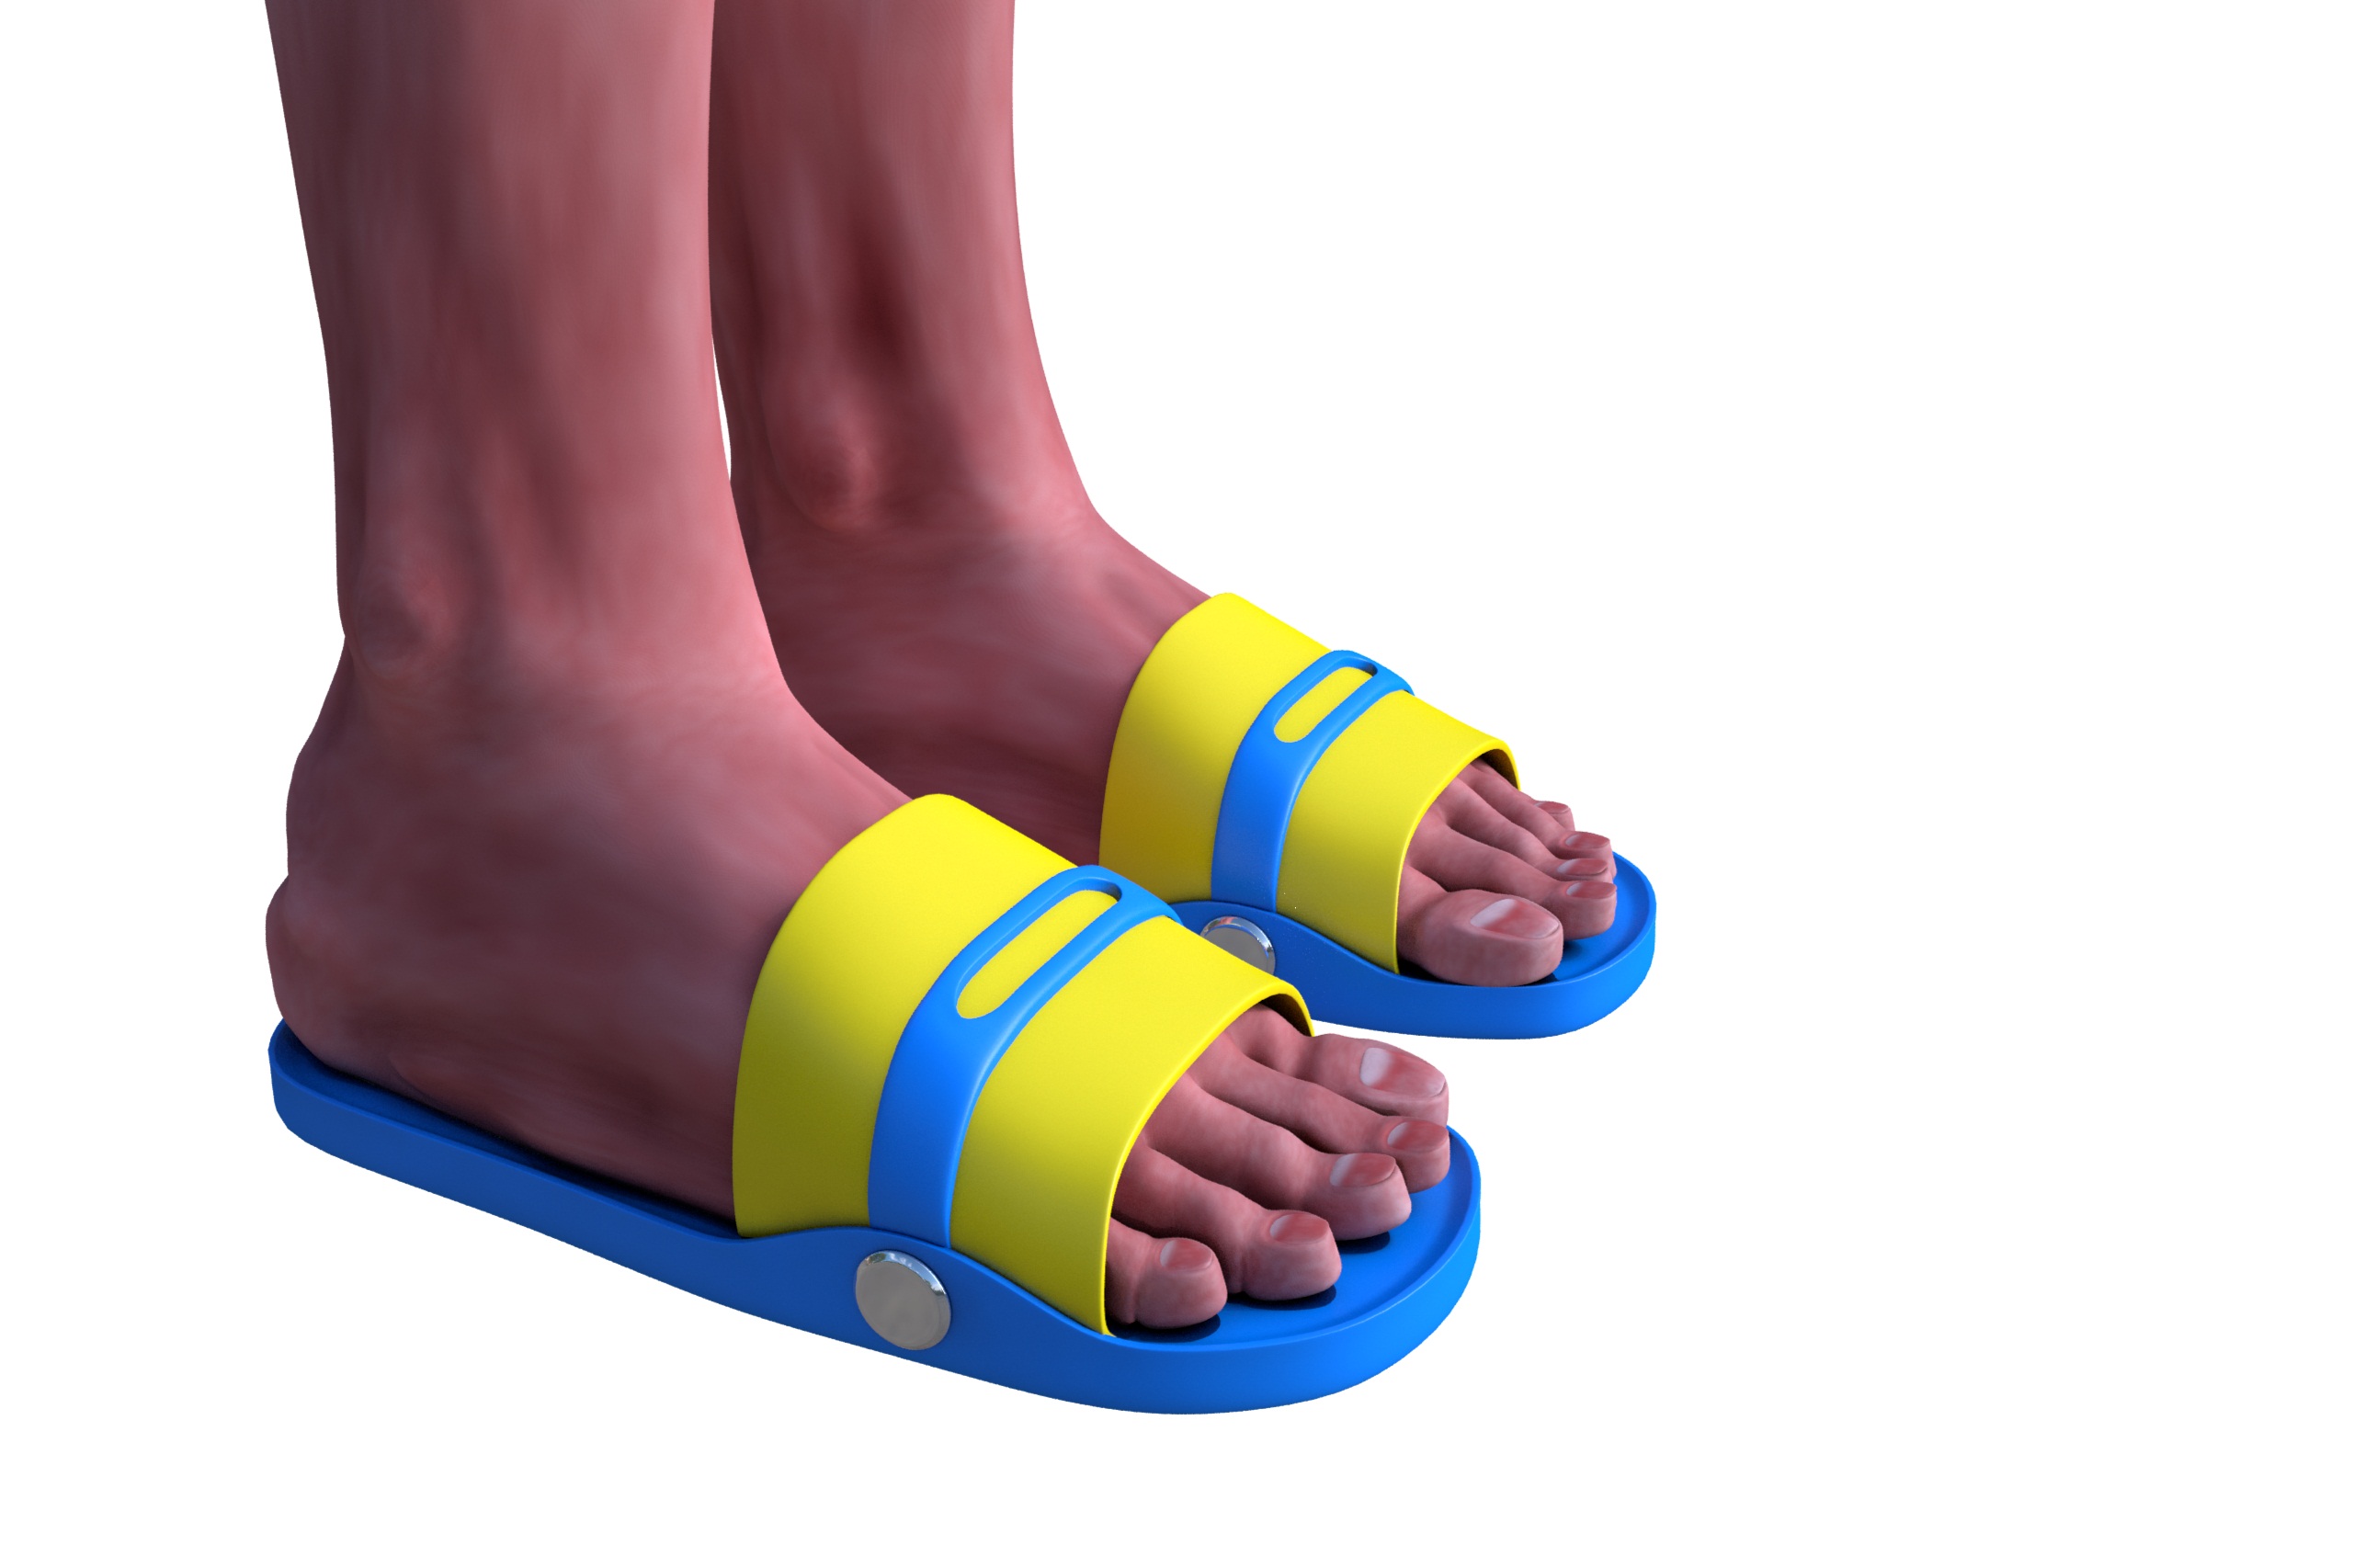 flipper sandal